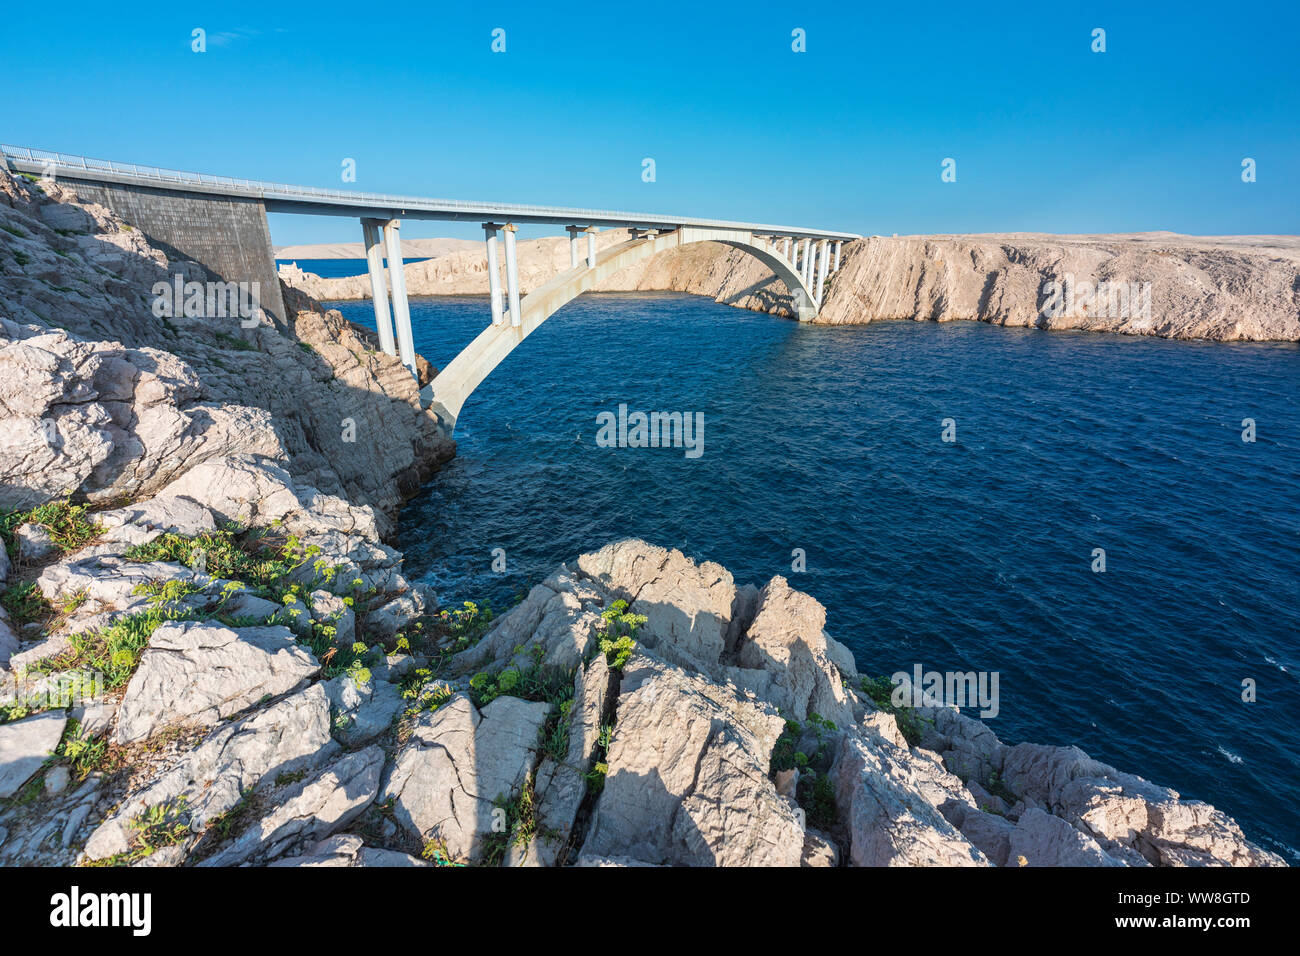 La plupart Paski pont qui relie la partie continentale de la Croatie et de l'île de Pag, Zara, Zadar, Croatie, Dalmatie Comté Banque D'Images